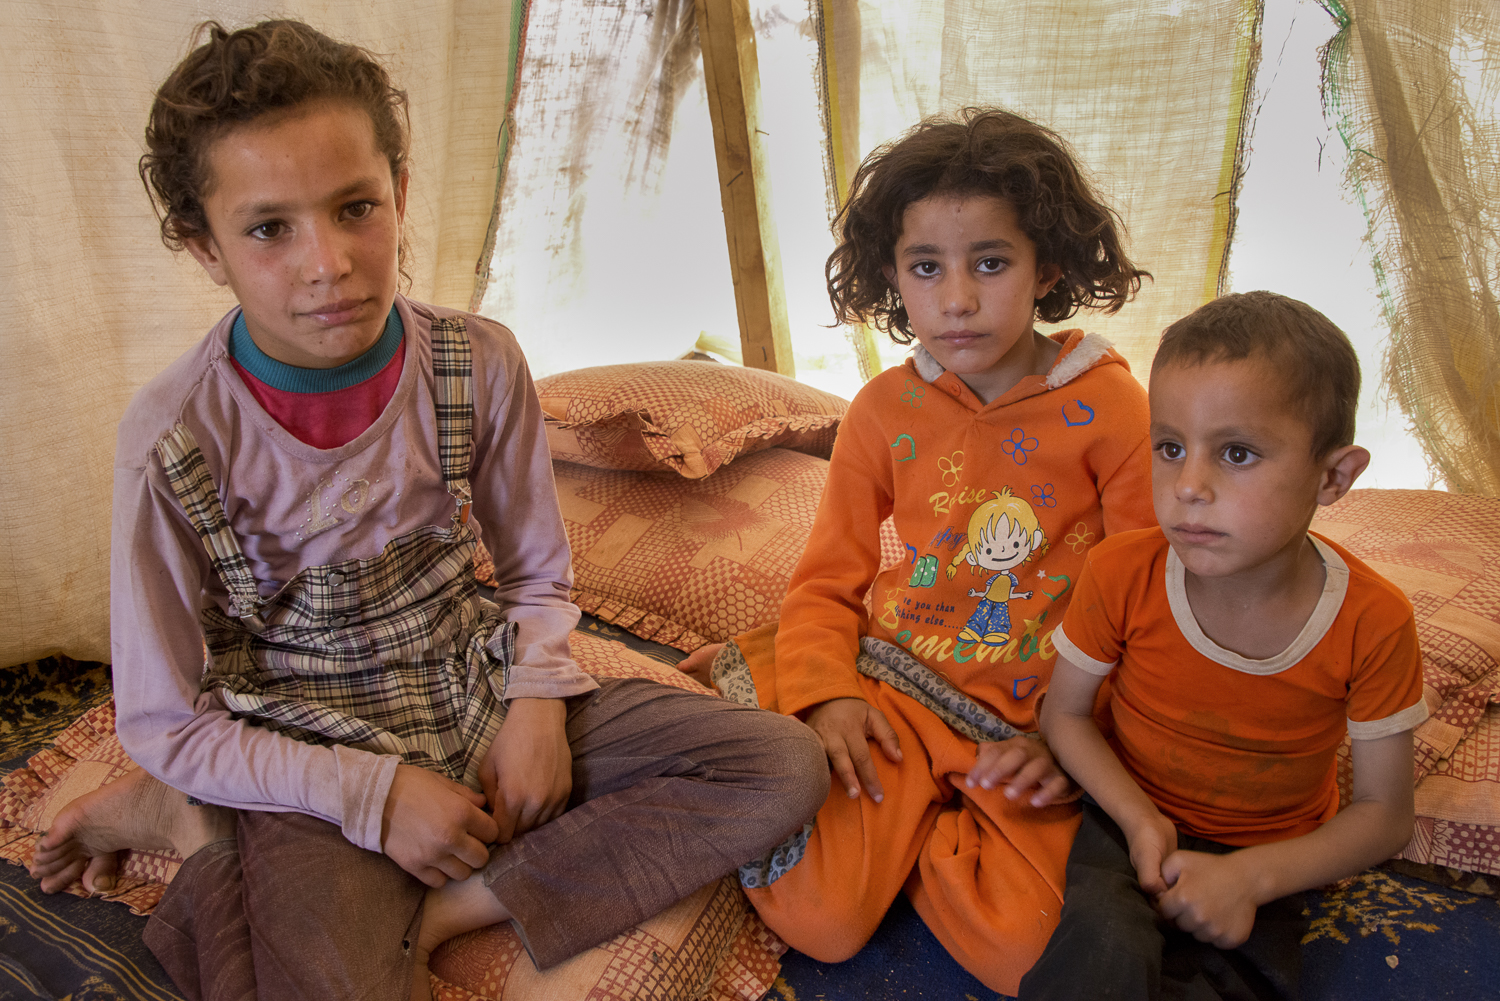 jo-kearney-photography-video-refugees-lebanon-bekaa-valley-syrian-refugees-children.jpg